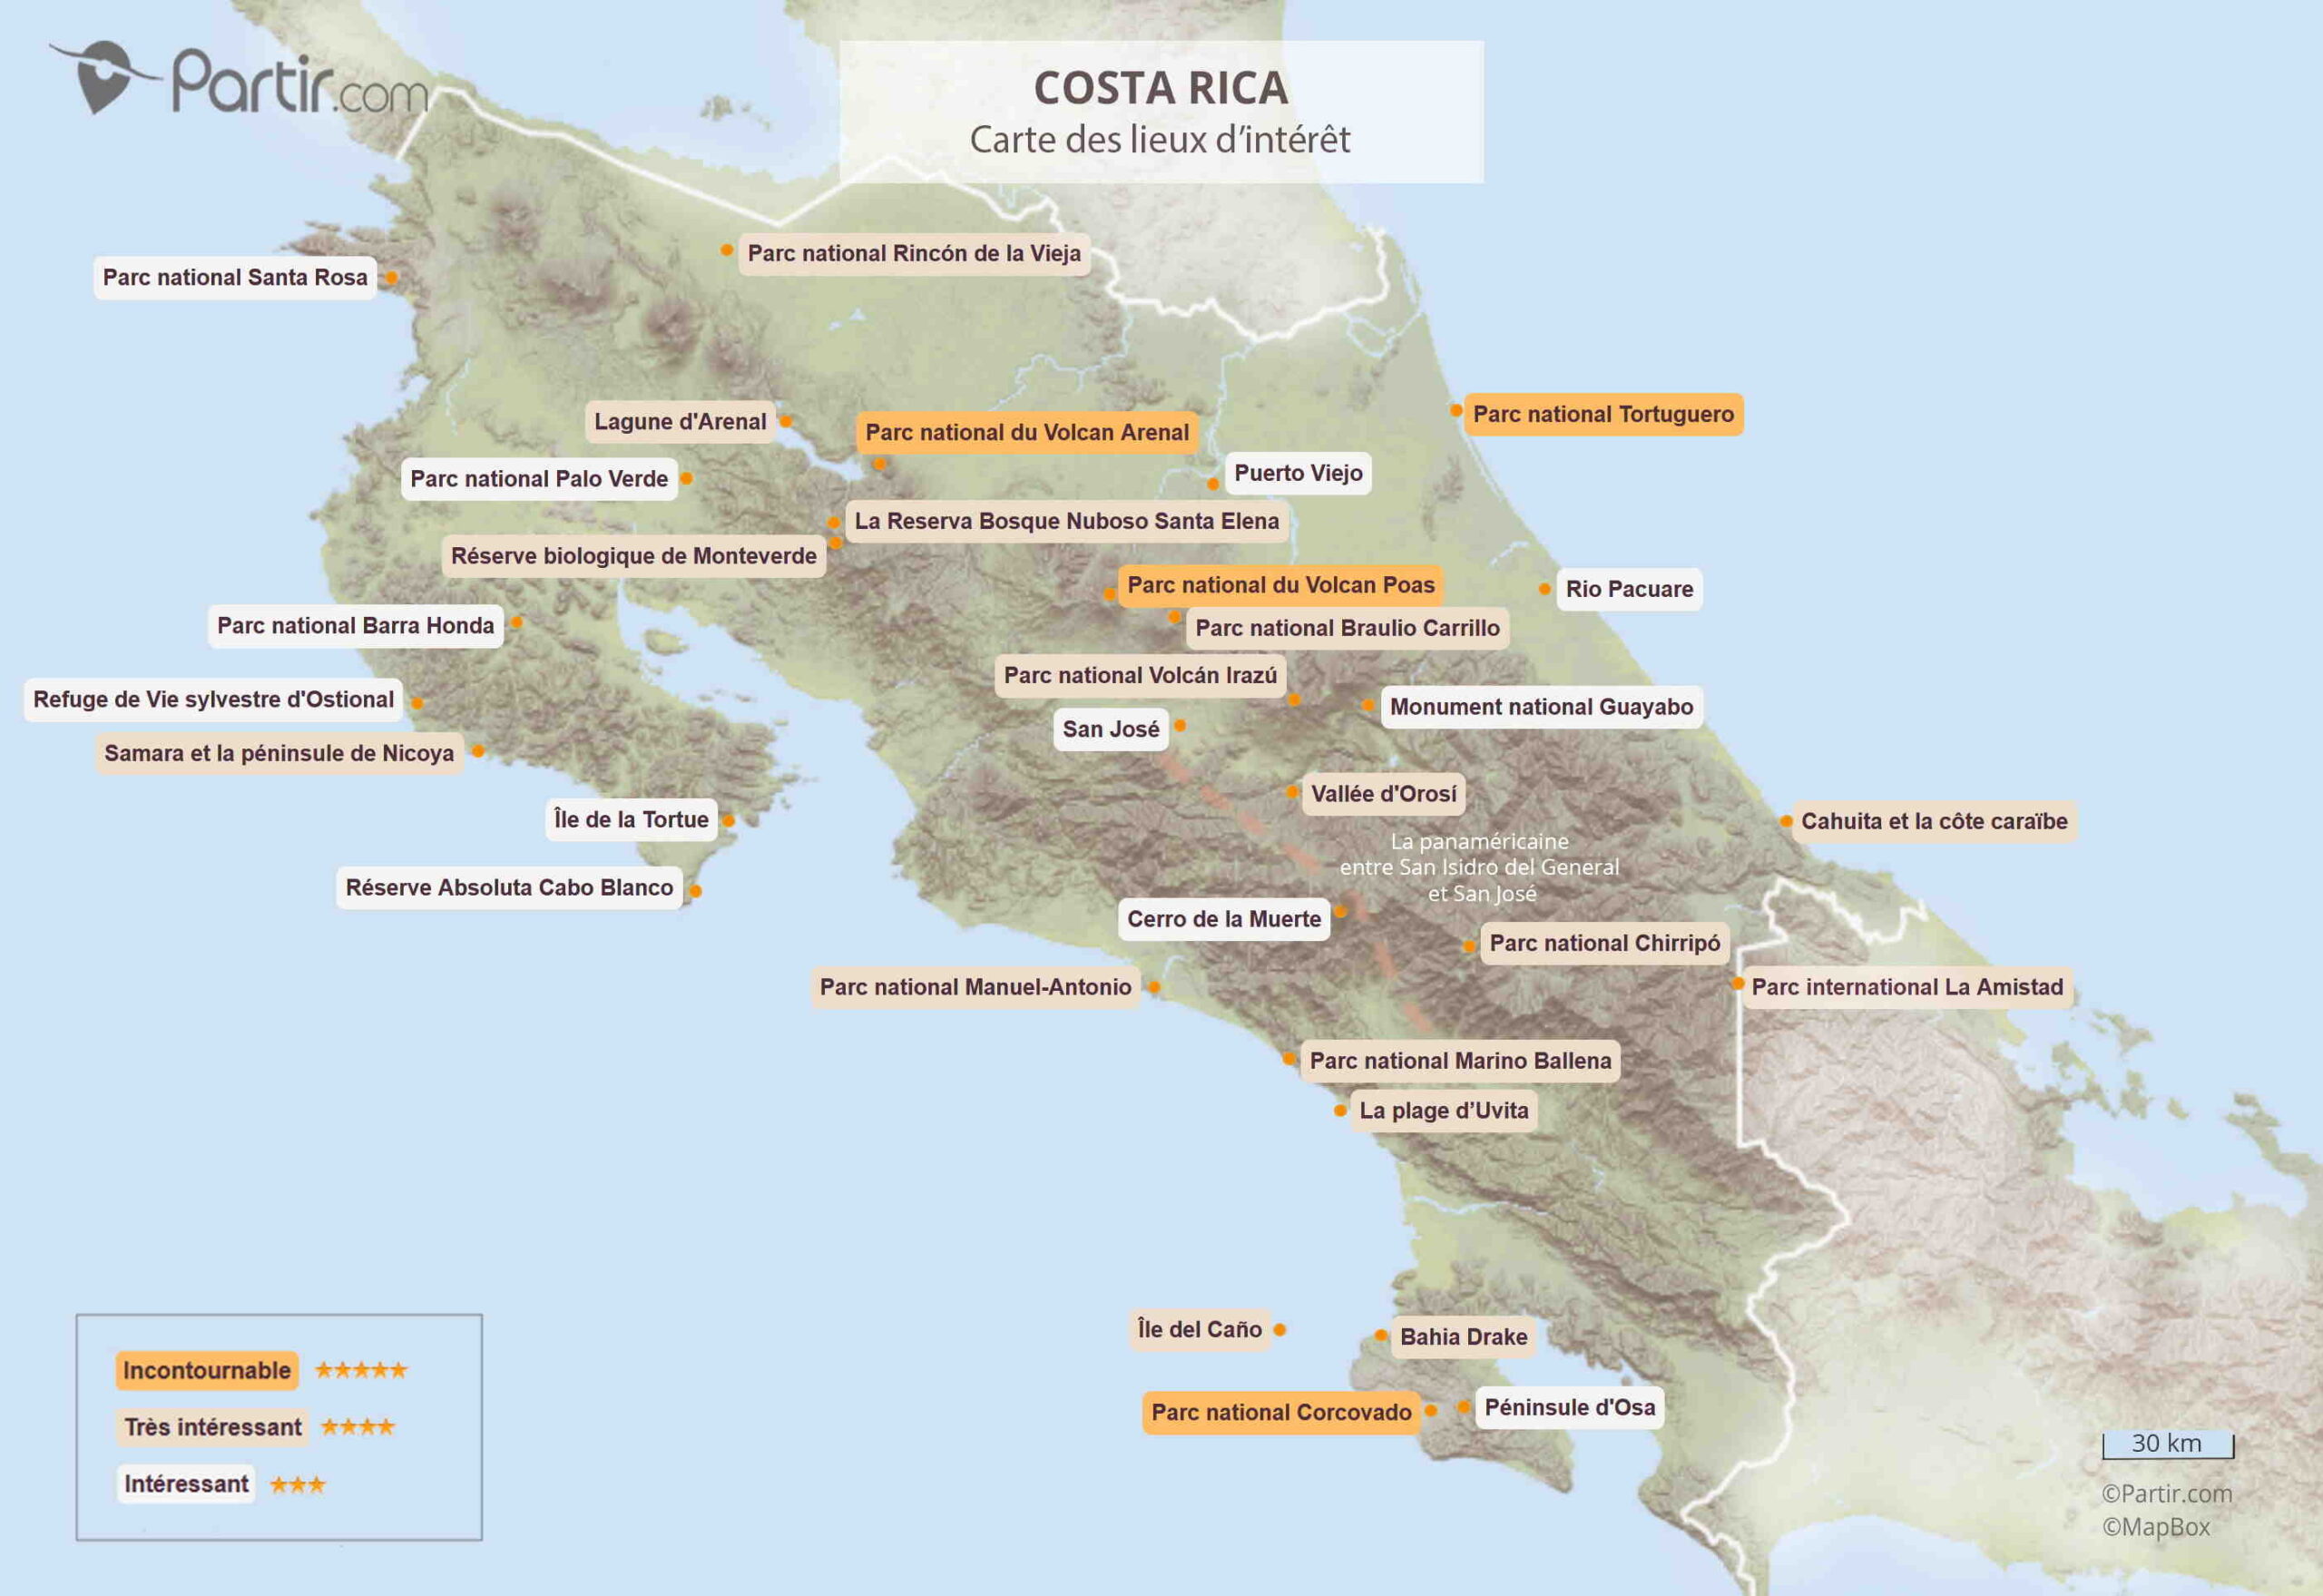 Pourquoi le Costa Rica n'est pas un pays totalement vert ?